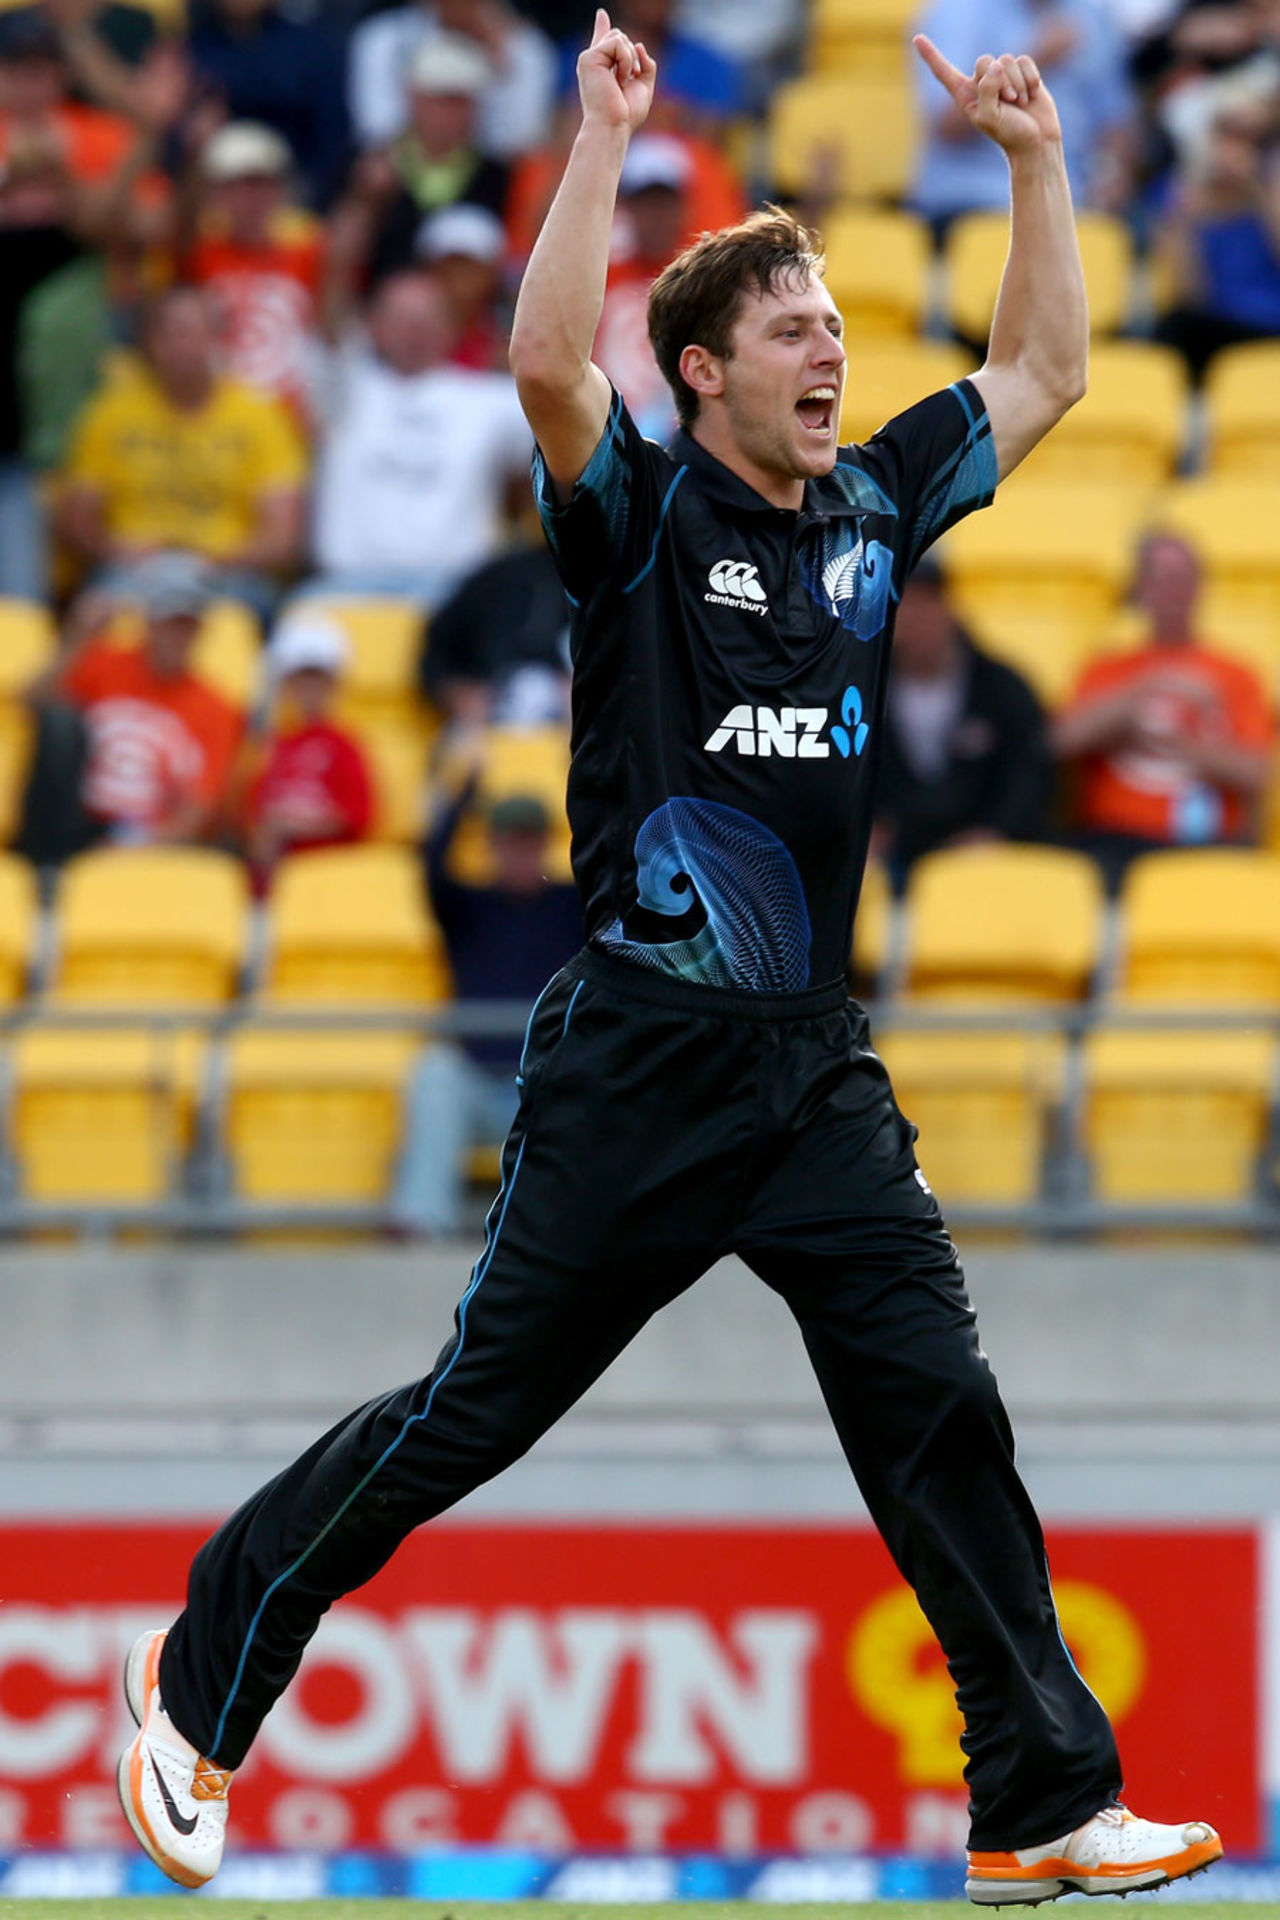 Matt Henry celebrates the fall of a wicket, New Zealand v India, 5th ODI, ton, January 31, 2014